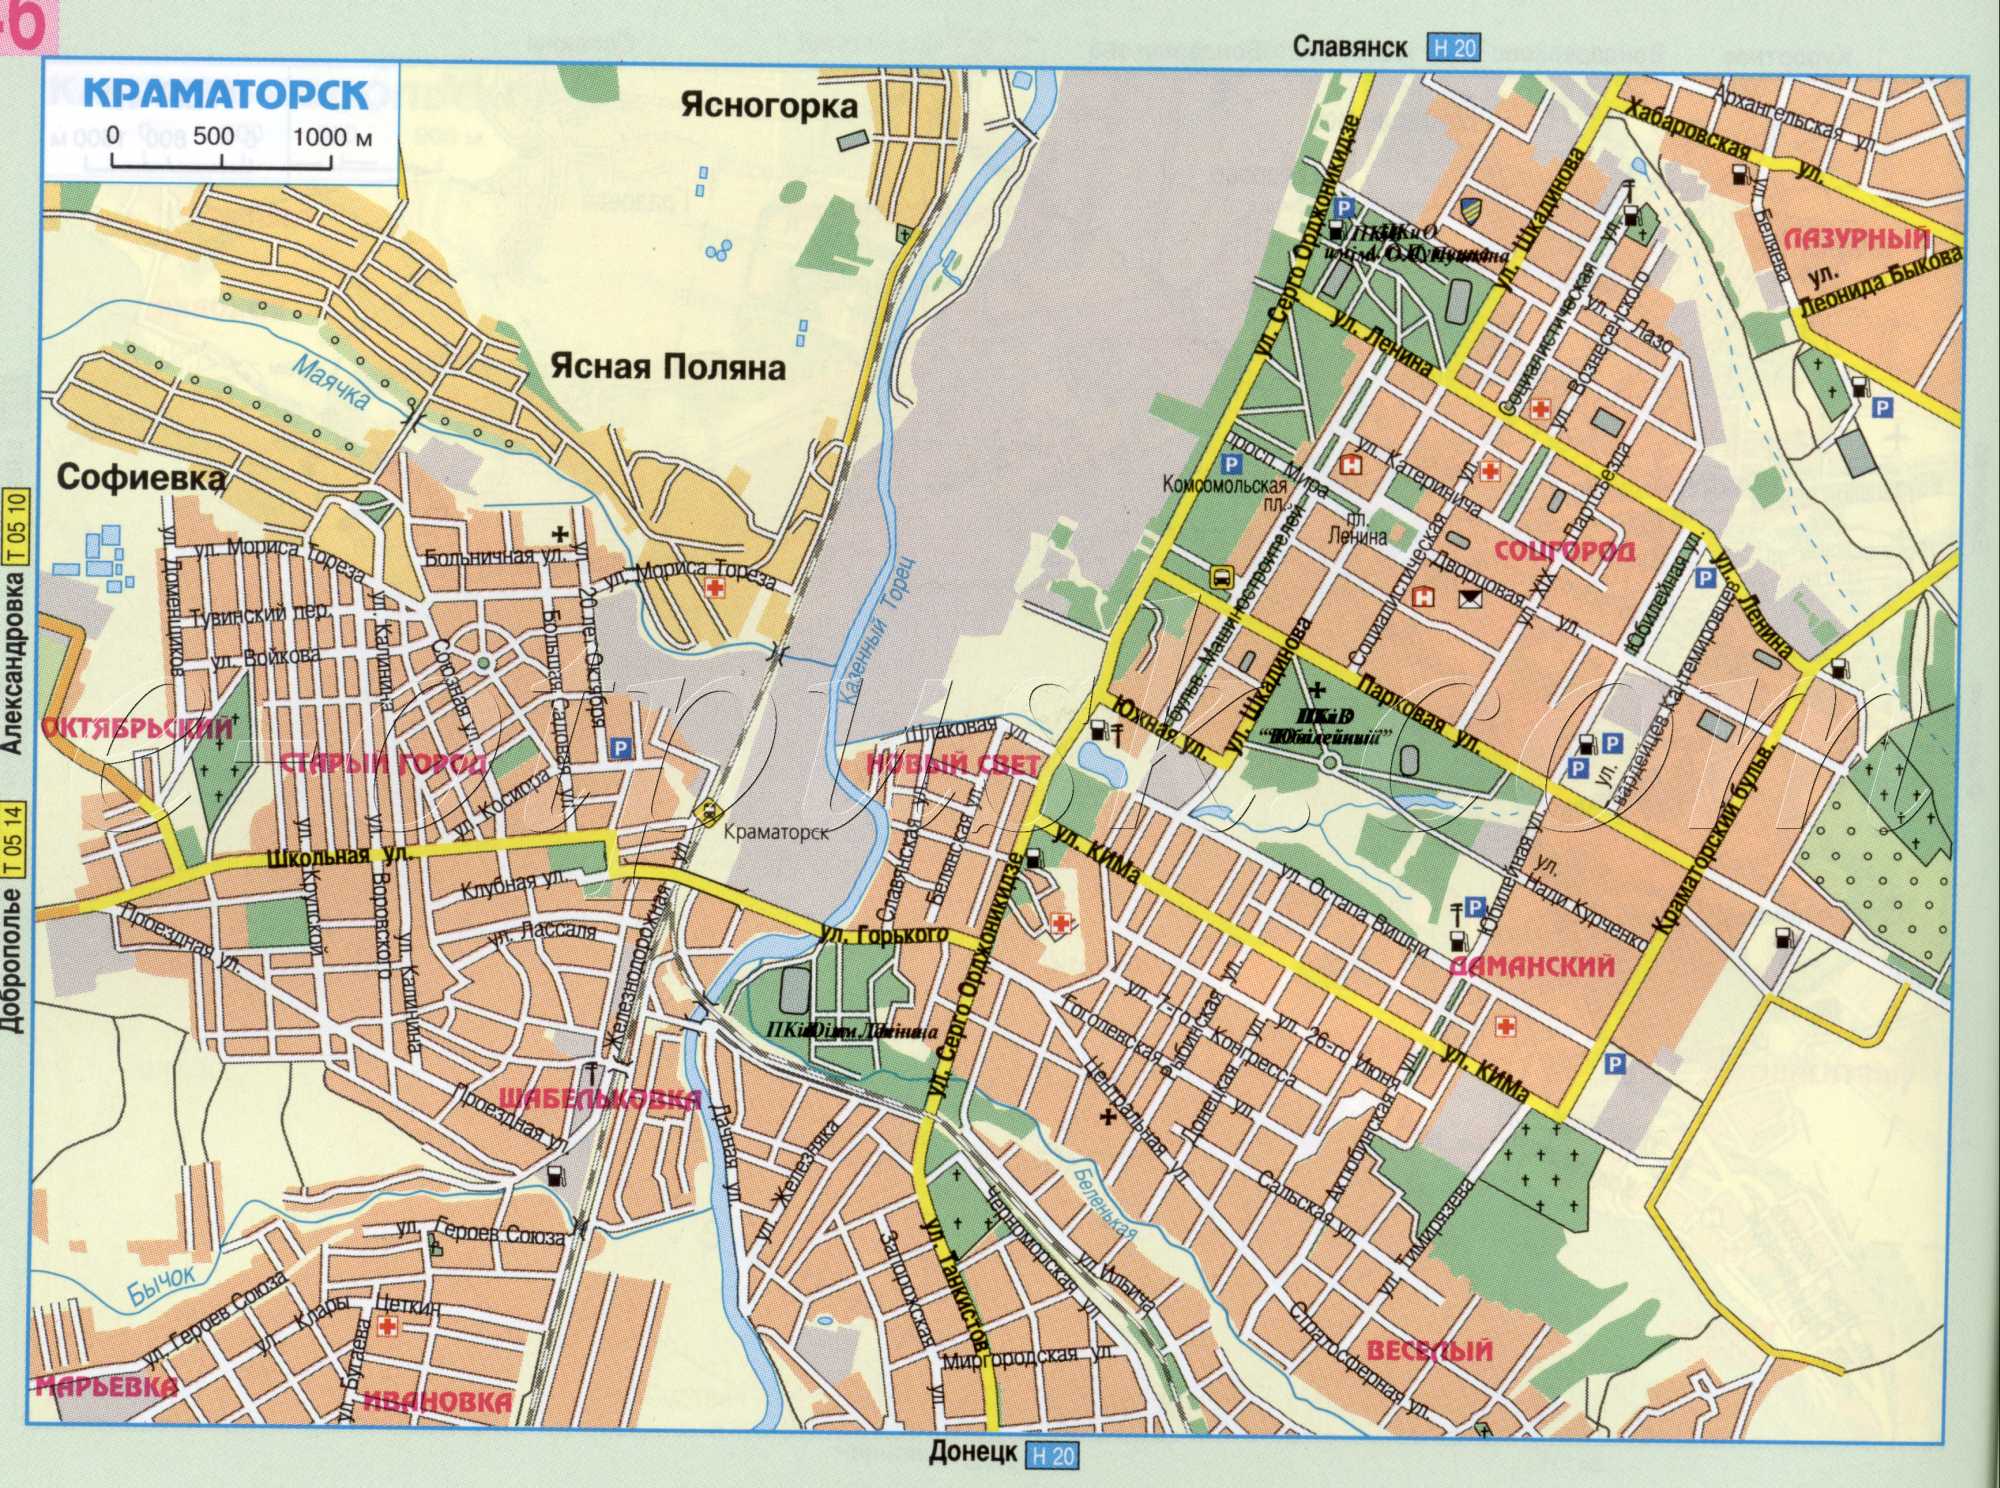 Map of Kramatorsk (Donetsk region, Kramatorsk). Detailed road map download for free